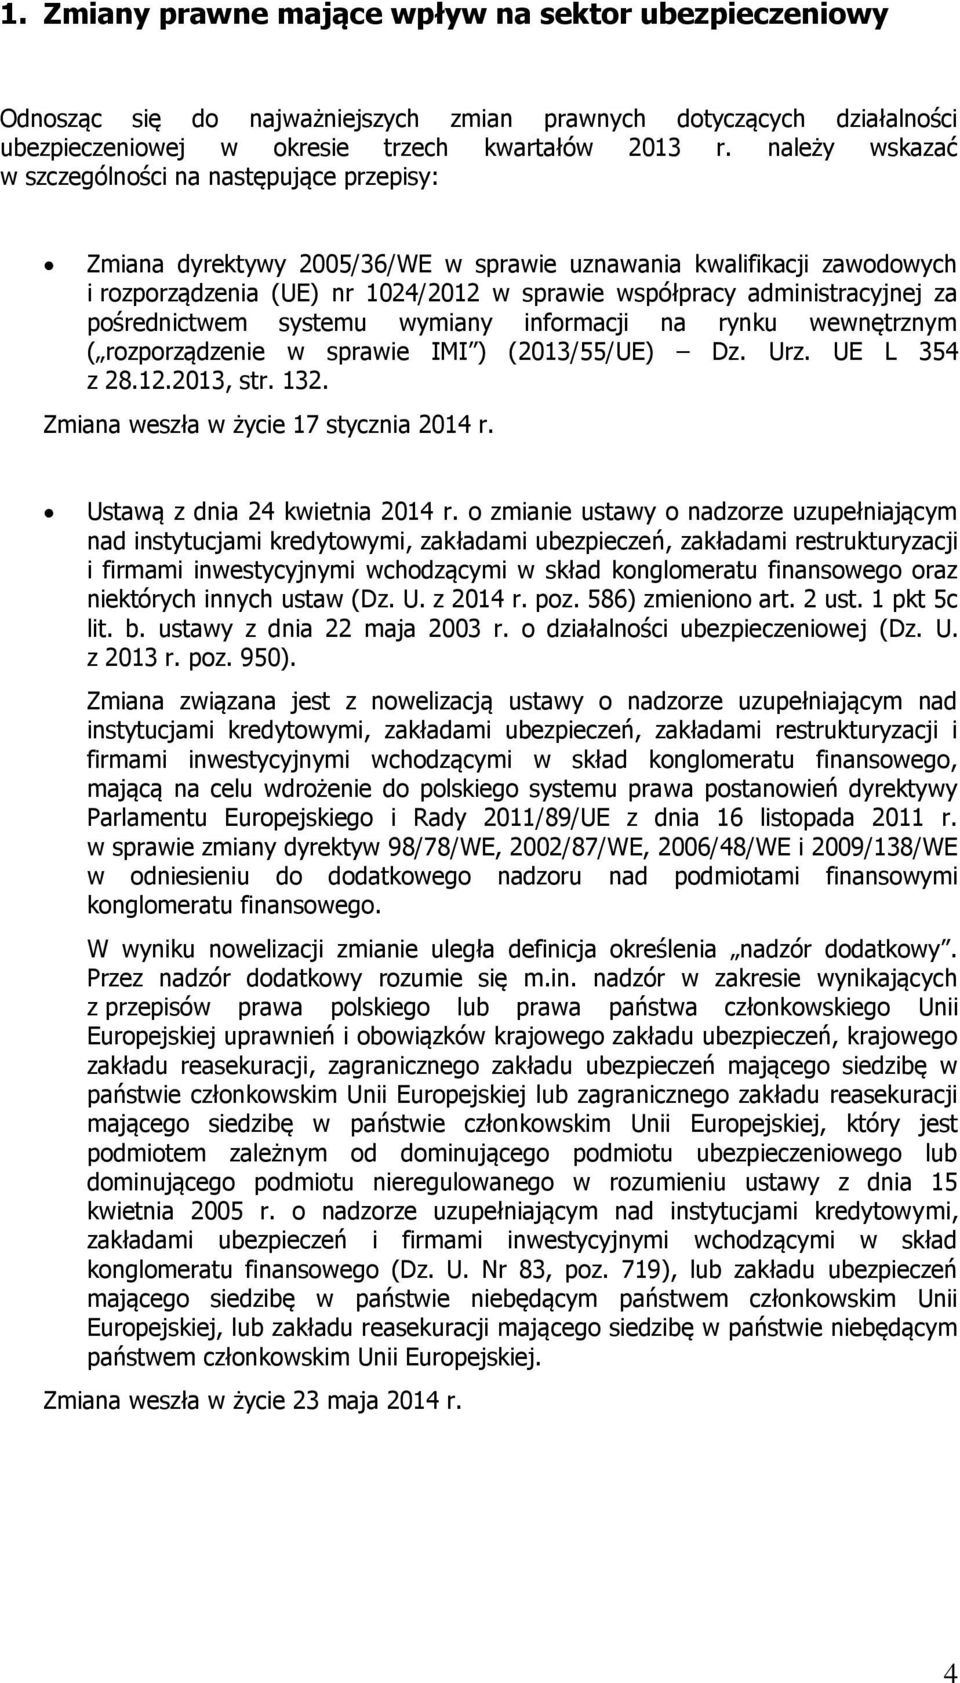 administracyjnej za pośrednictwem systemu wymiany informacji na rynku wewnętrznym ( rozporządzenie w sprawie IMI ) (2013/55/UE) Dz. Urz. UE L 354 z 28.12.2013, str. 132.